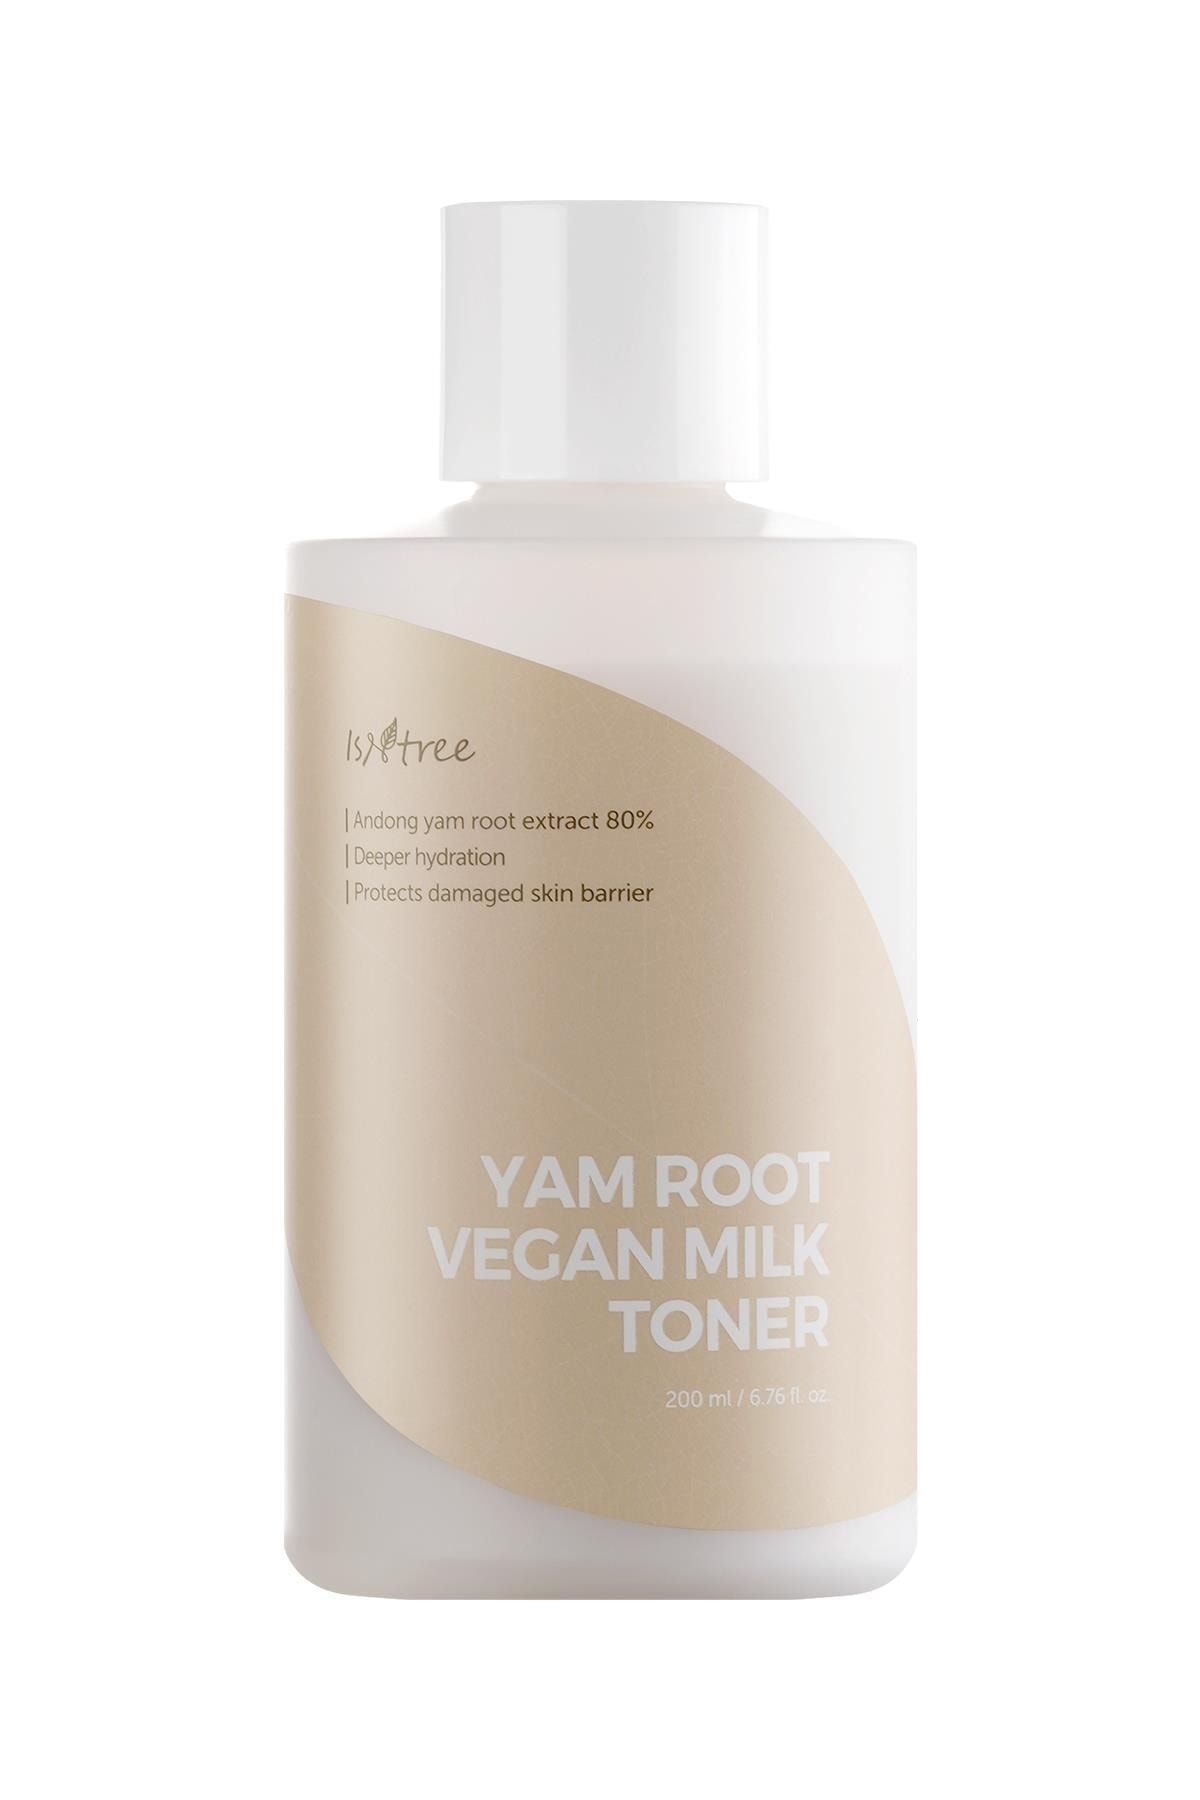 Isntree Yam Root Vegan Milk Toner 200 Ml (cilt Bariyeri Koruyucu Yağ Bazlı Vegan Tonik)